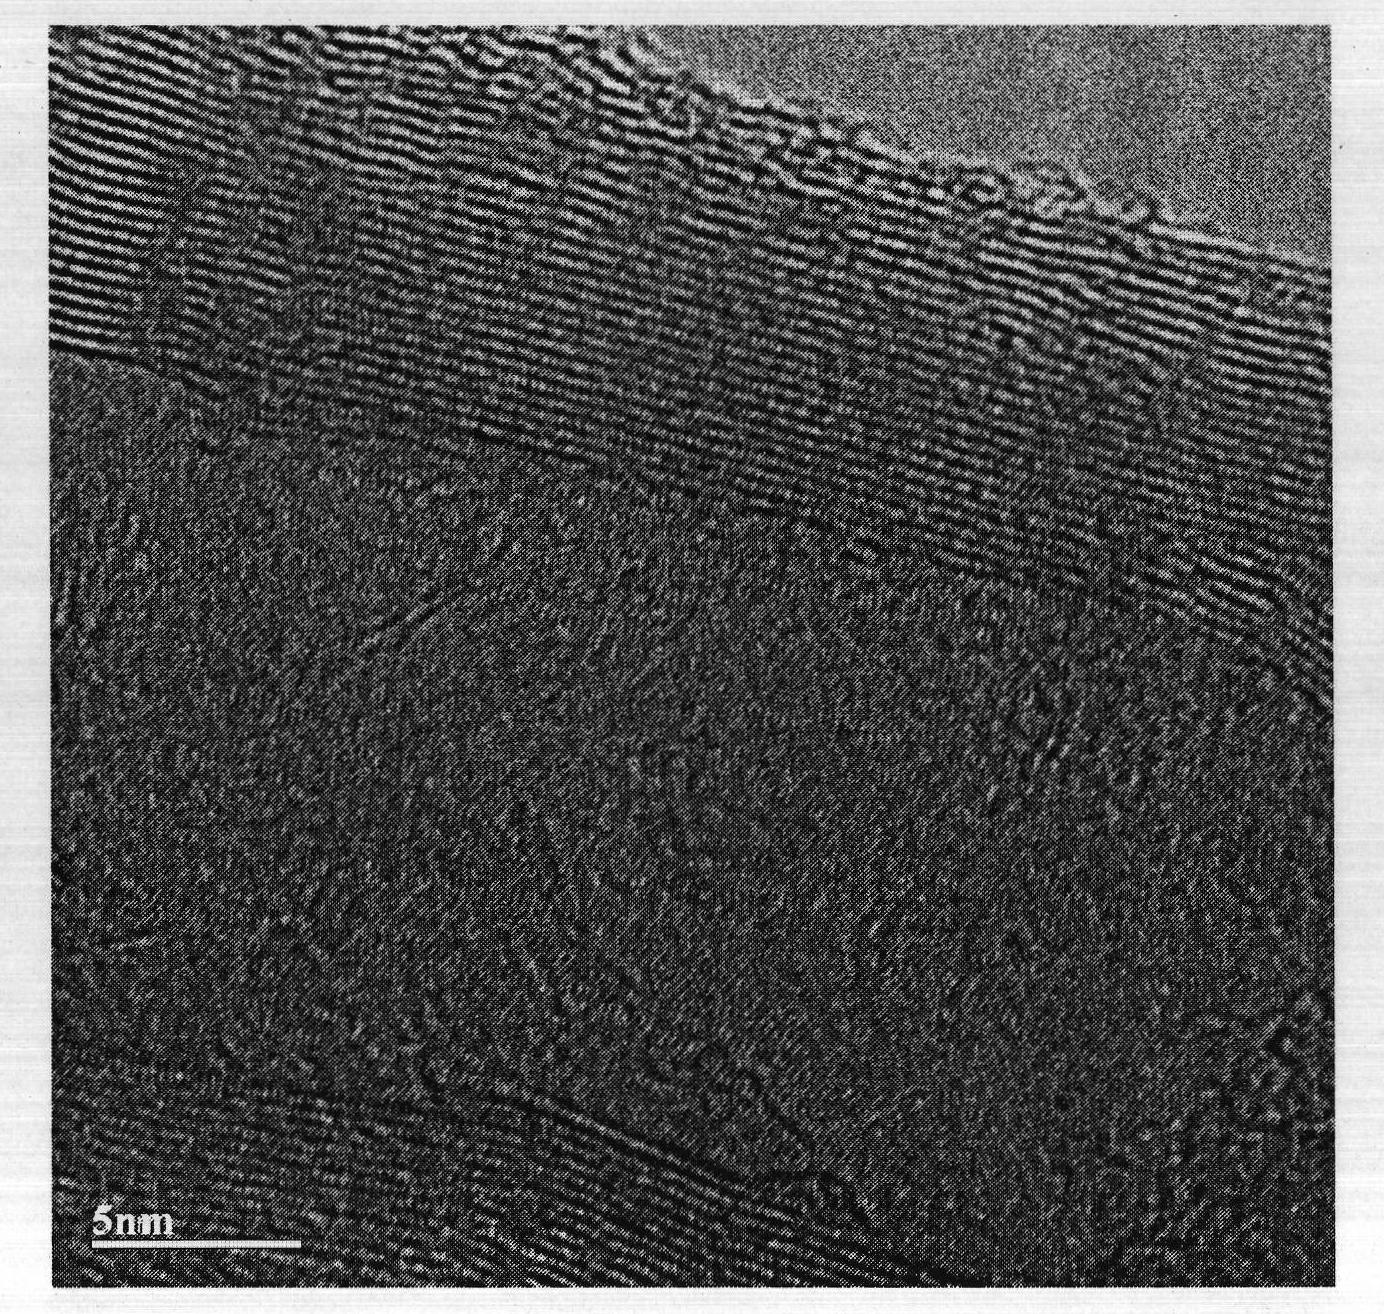 Method for preparing nitrogen-phosphorus codoped multi-walled carbon nanotube